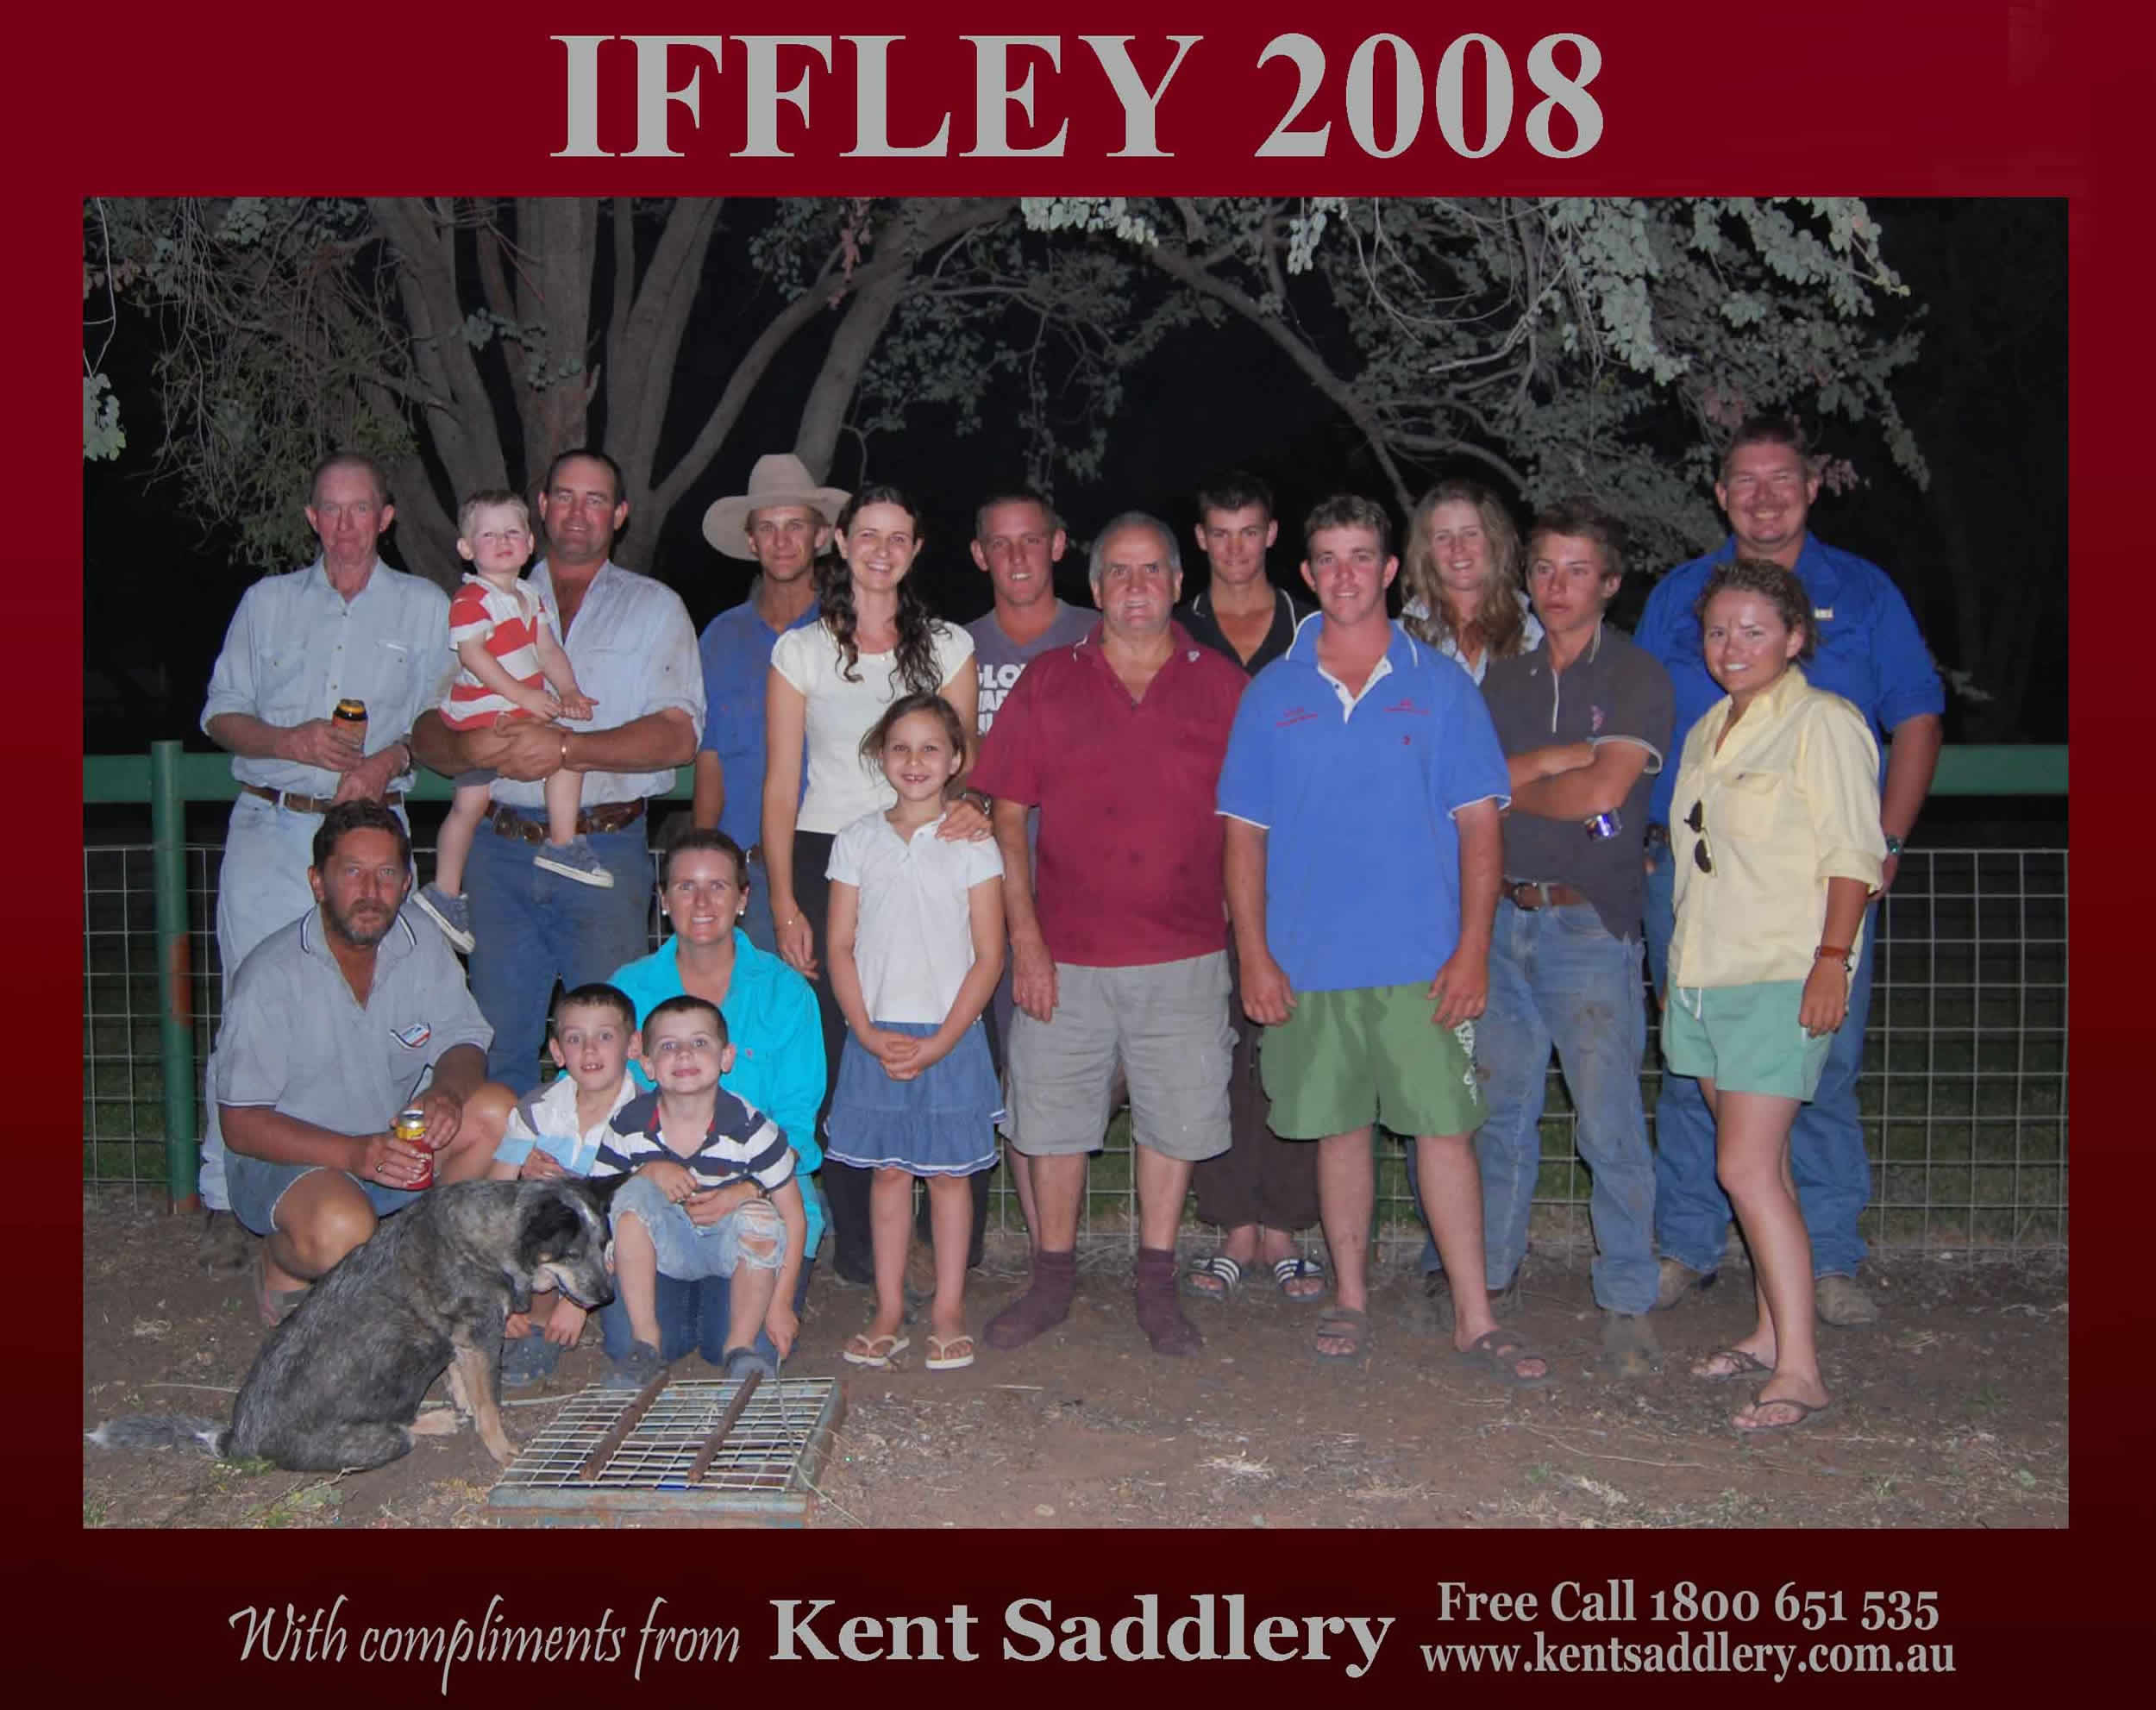 Queensland - Iffley 26